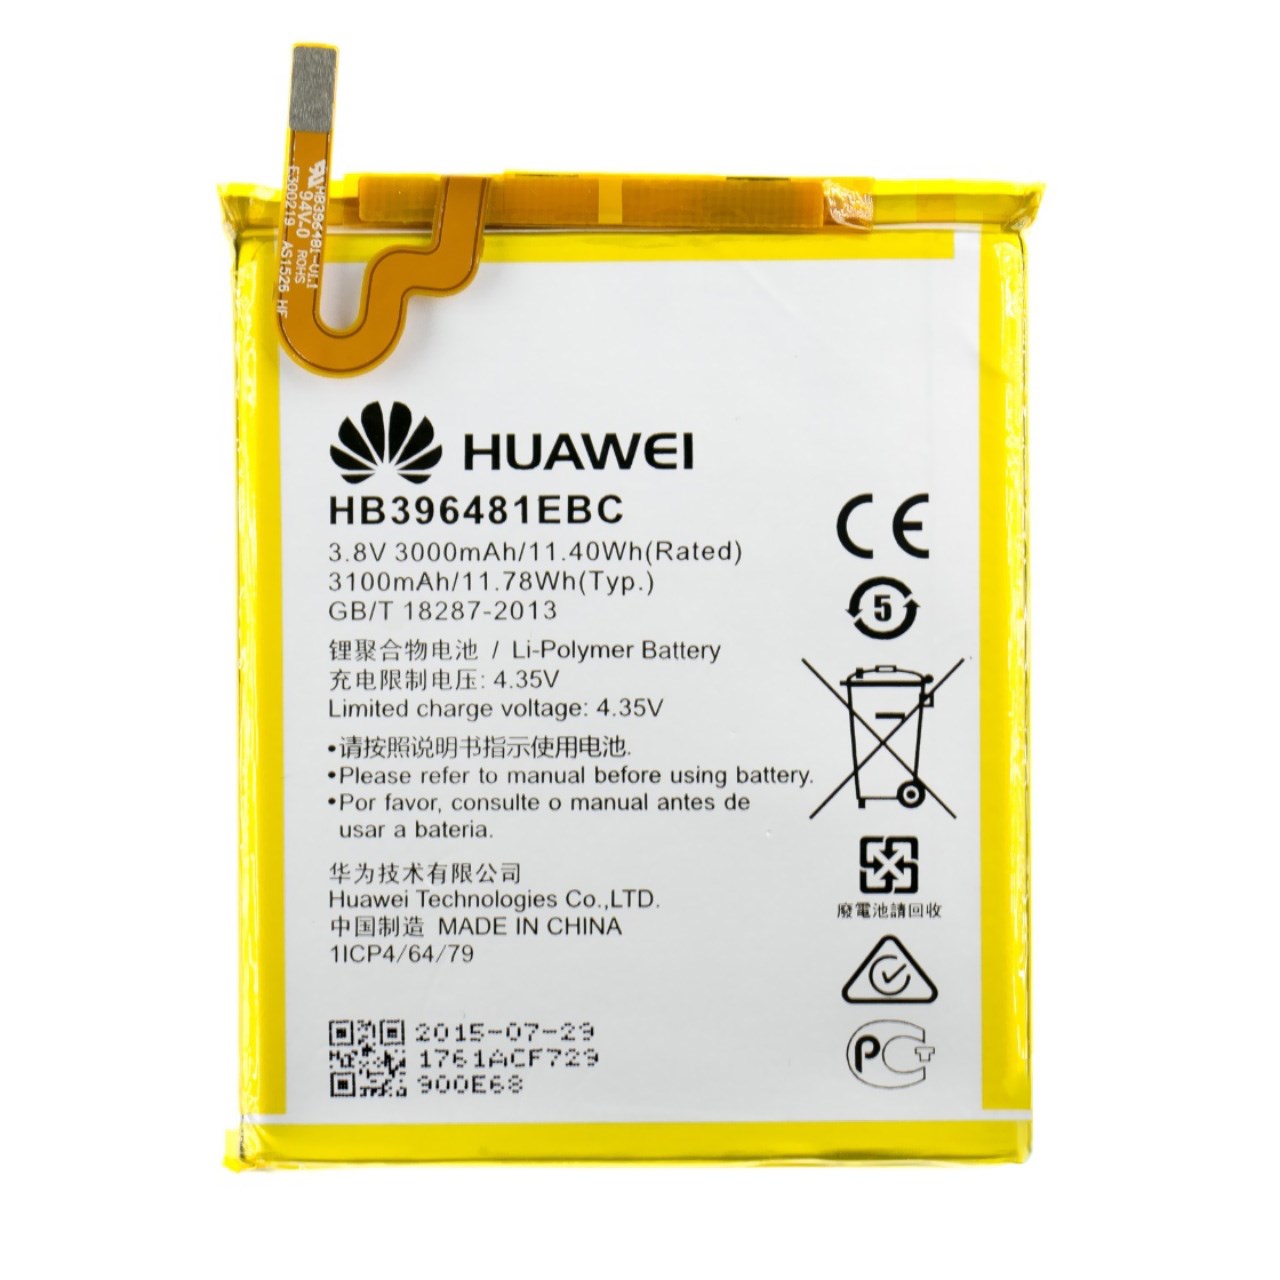 باتری موبایل هوآوی مدل HB396481EBC با ظرفیت 3000mAh مناسب برای گوشی موبایل هوآوی Honor 5X